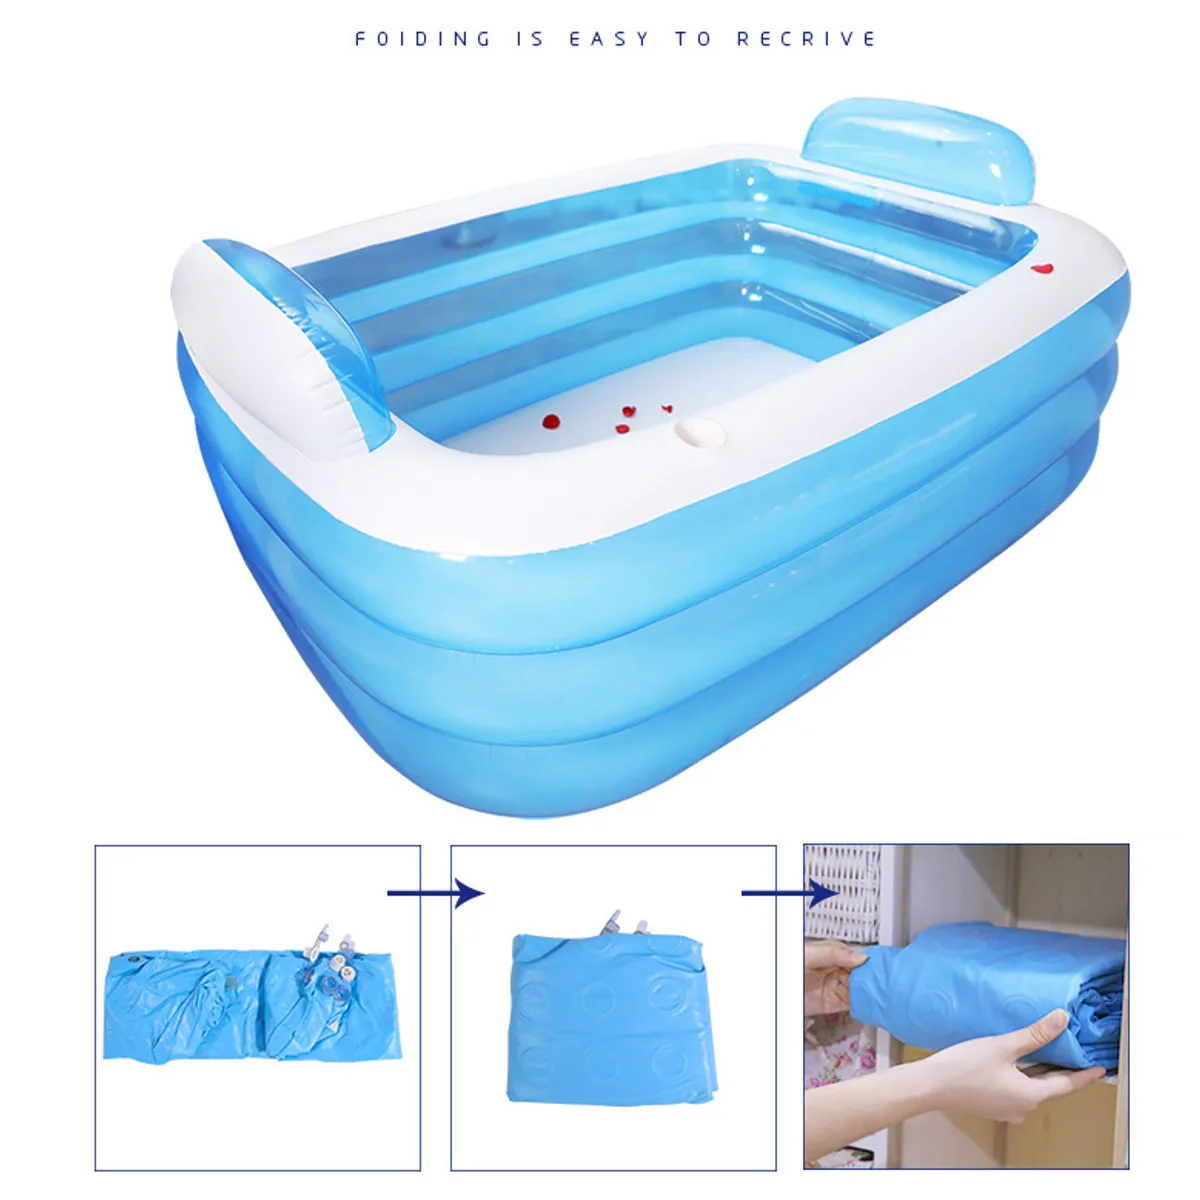 180 см/150 см Складная Ванна, надувная ванна для взрослых, сохраняющая тепло, плавательный бассейн, ванна с воздушным насосом, ванна для купания